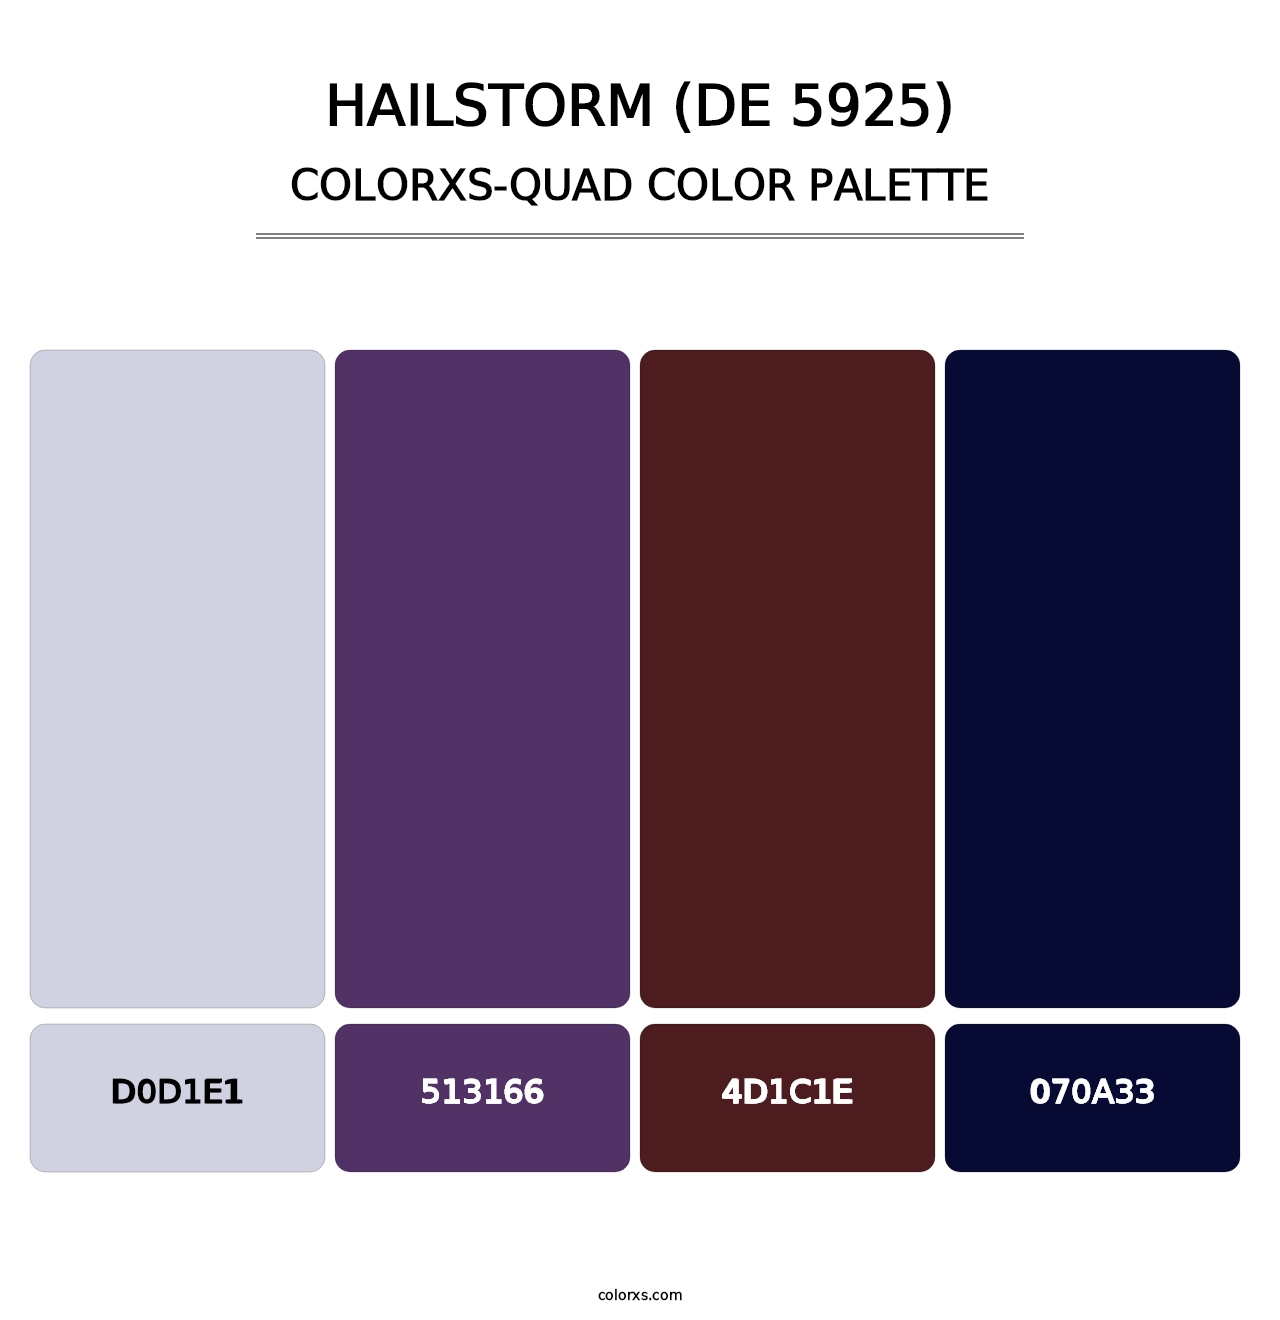 Hailstorm (DE 5925) - Colorxs Quad Palette